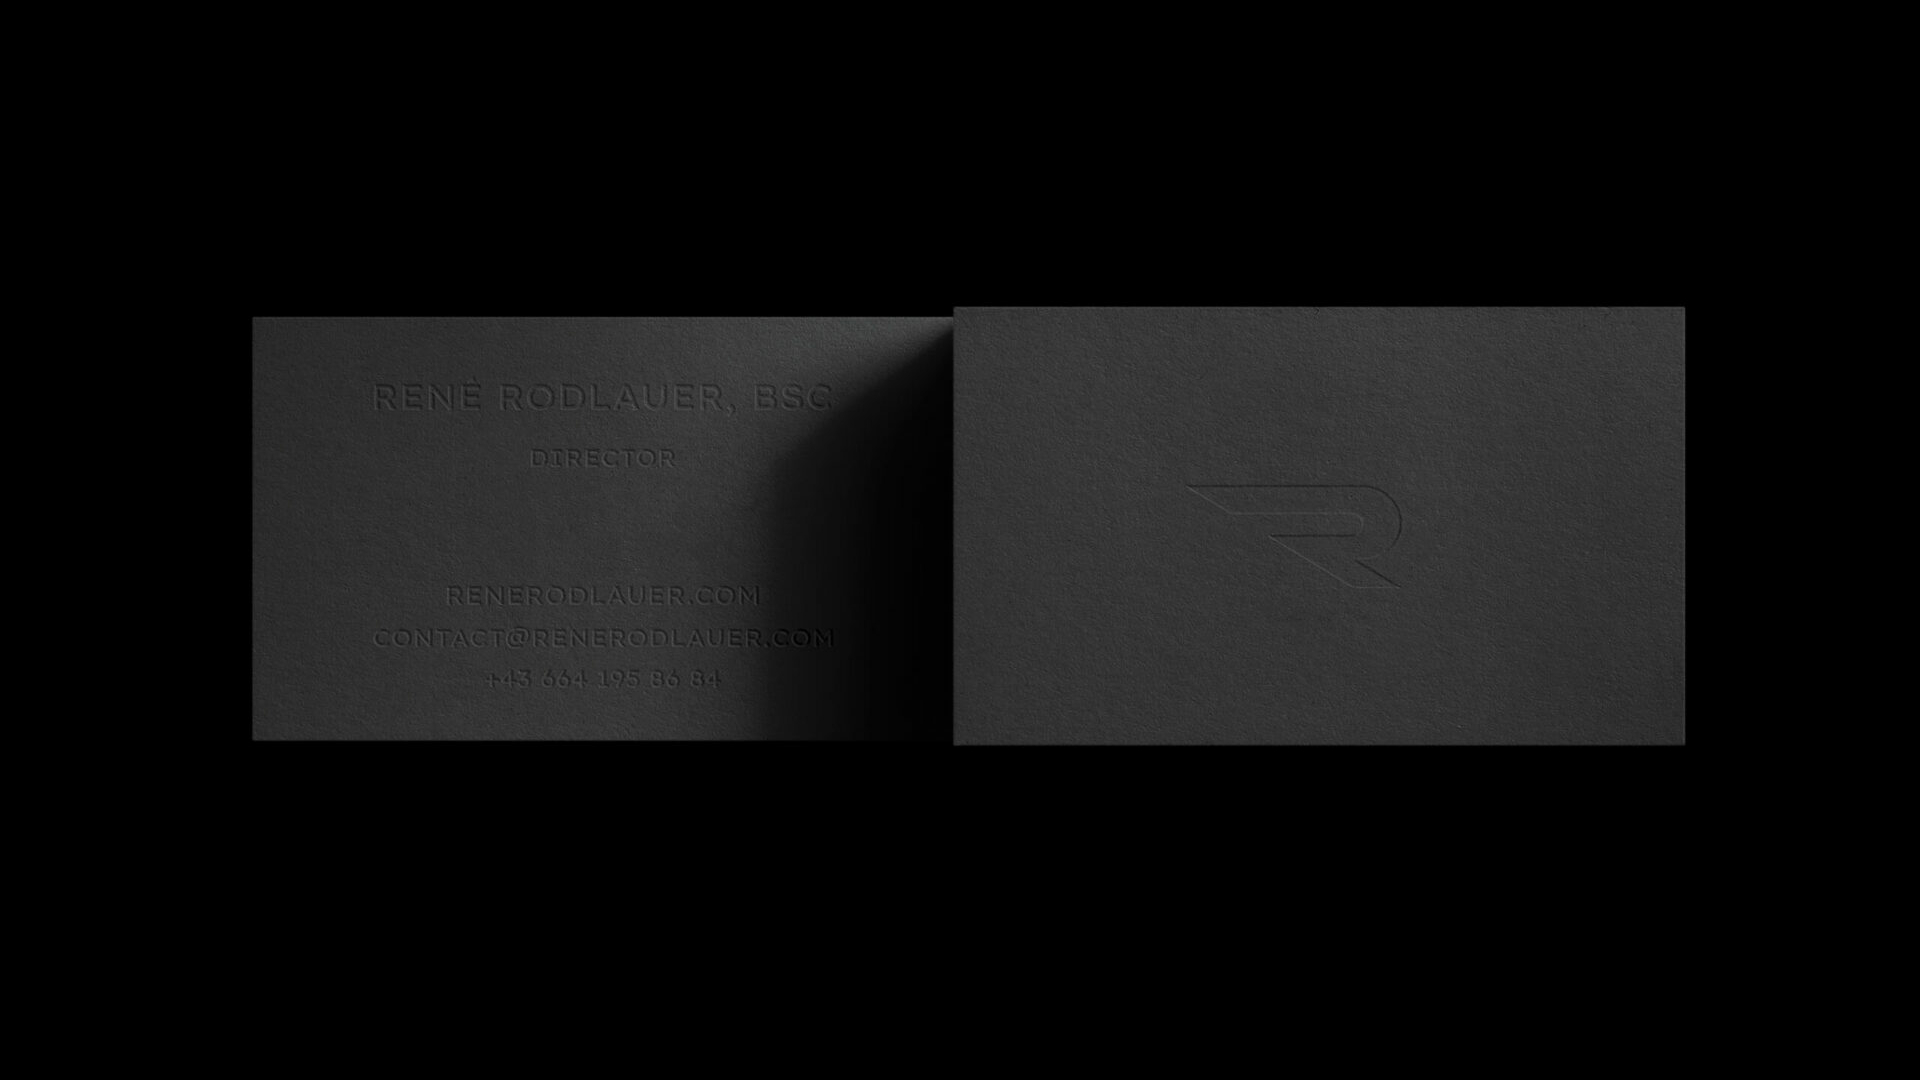 Graue Vorder- und Hinterseite der René Rodlauer Visitenkarte auf schwarzem Hintergrund. Auf der Vorderseite geprägt ist das R-Icon. Auf der Rückseite geprägt sind die Kontaktdaten.